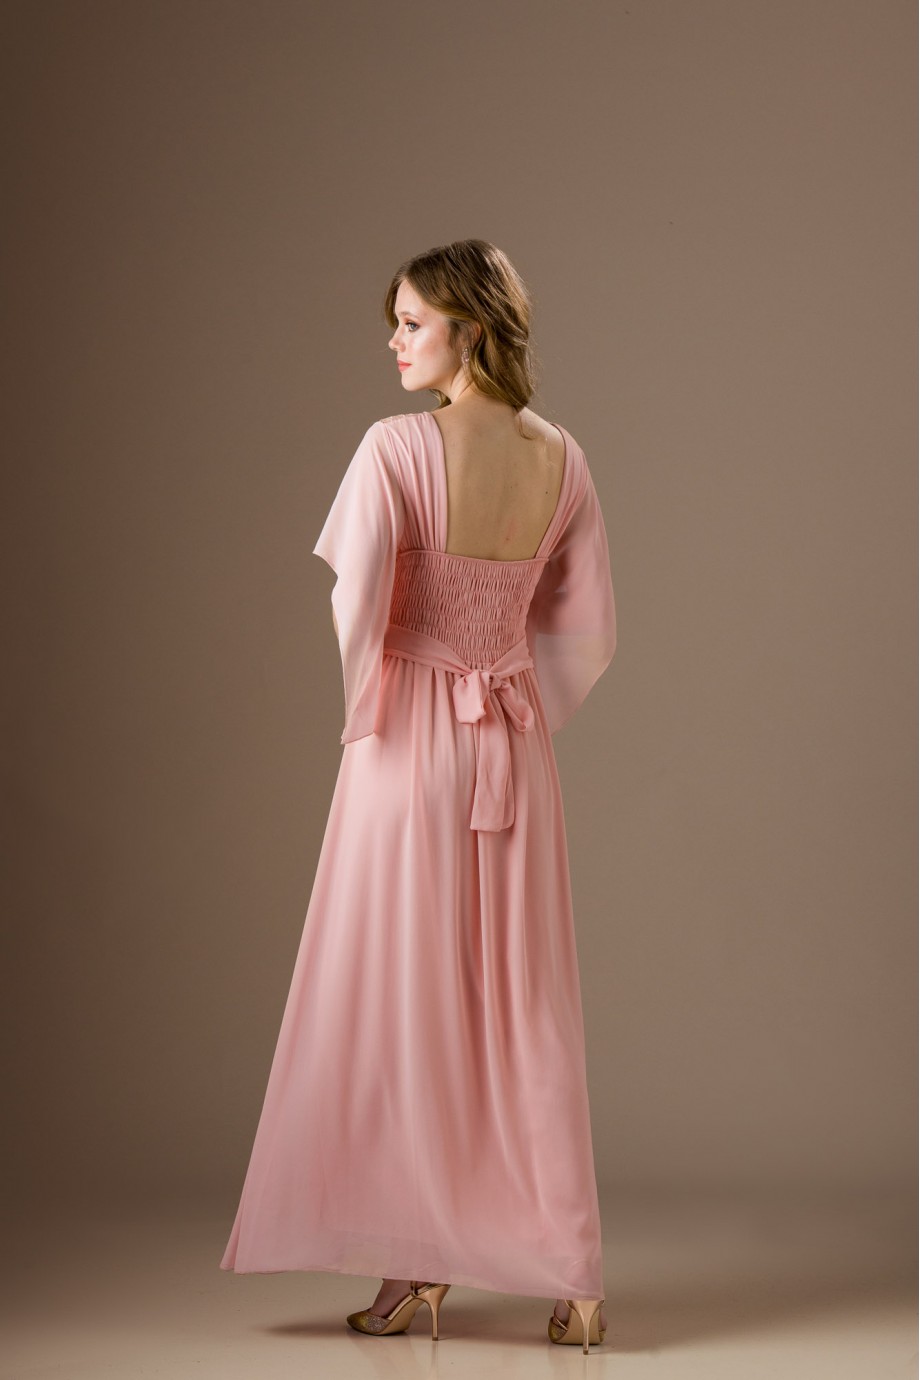 Μακρύ ροζ φόρεμα με δαντέλα και μακριά μανίκια